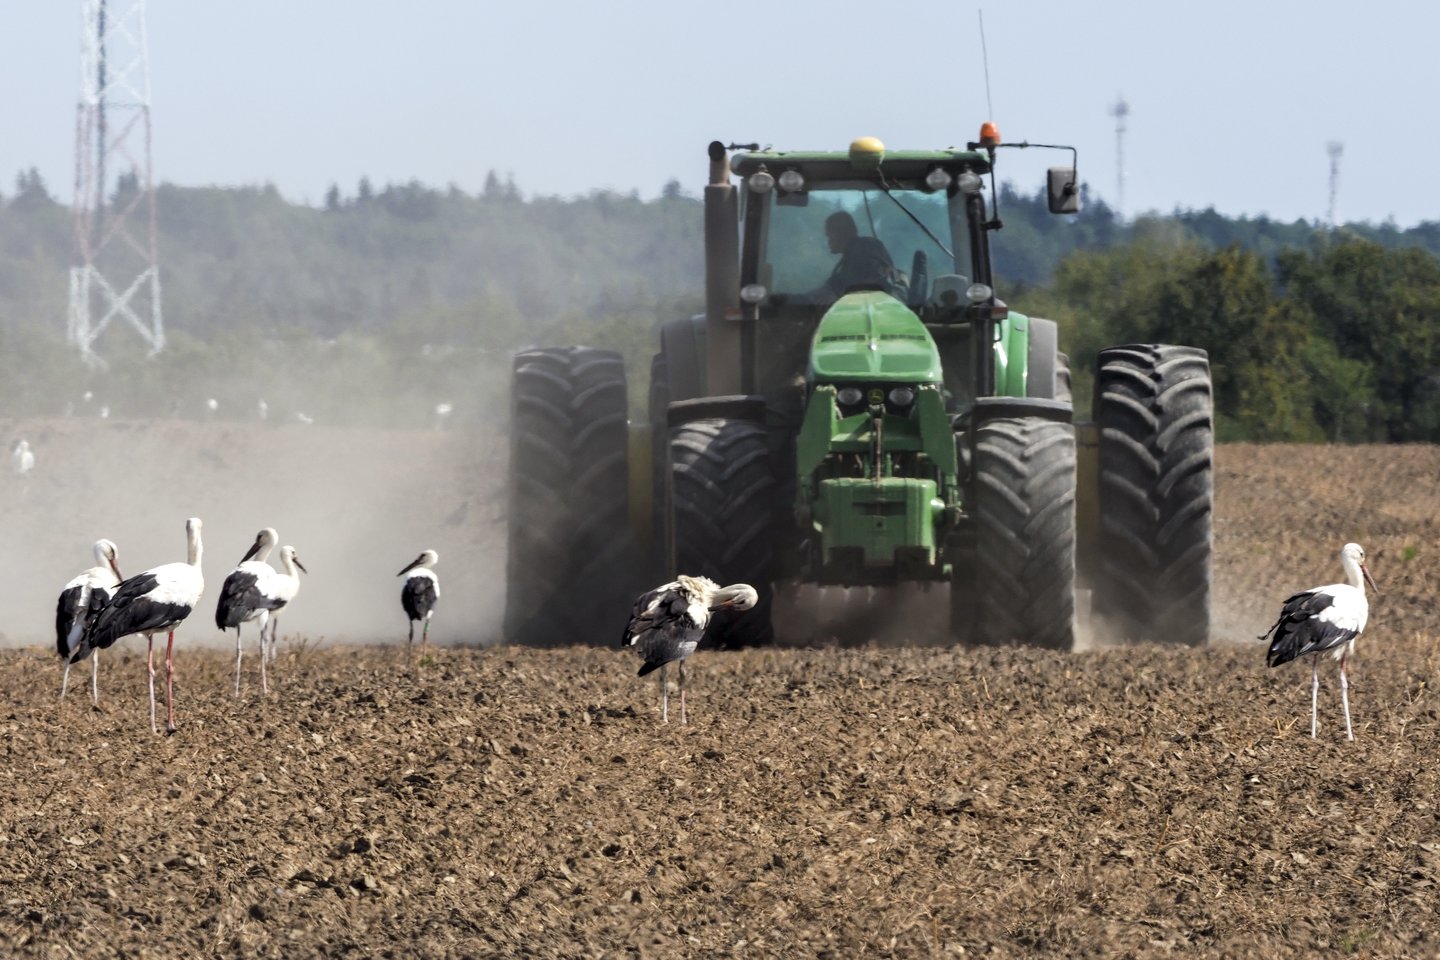 Ūkininkai atsargiai vertina plėtros planus: nelinkę iškart pirkti naujos žemės ūkio technikos, vis dažniau atsigręžia į jos nuomą.<br>V.Ščiavinsko nuotr.